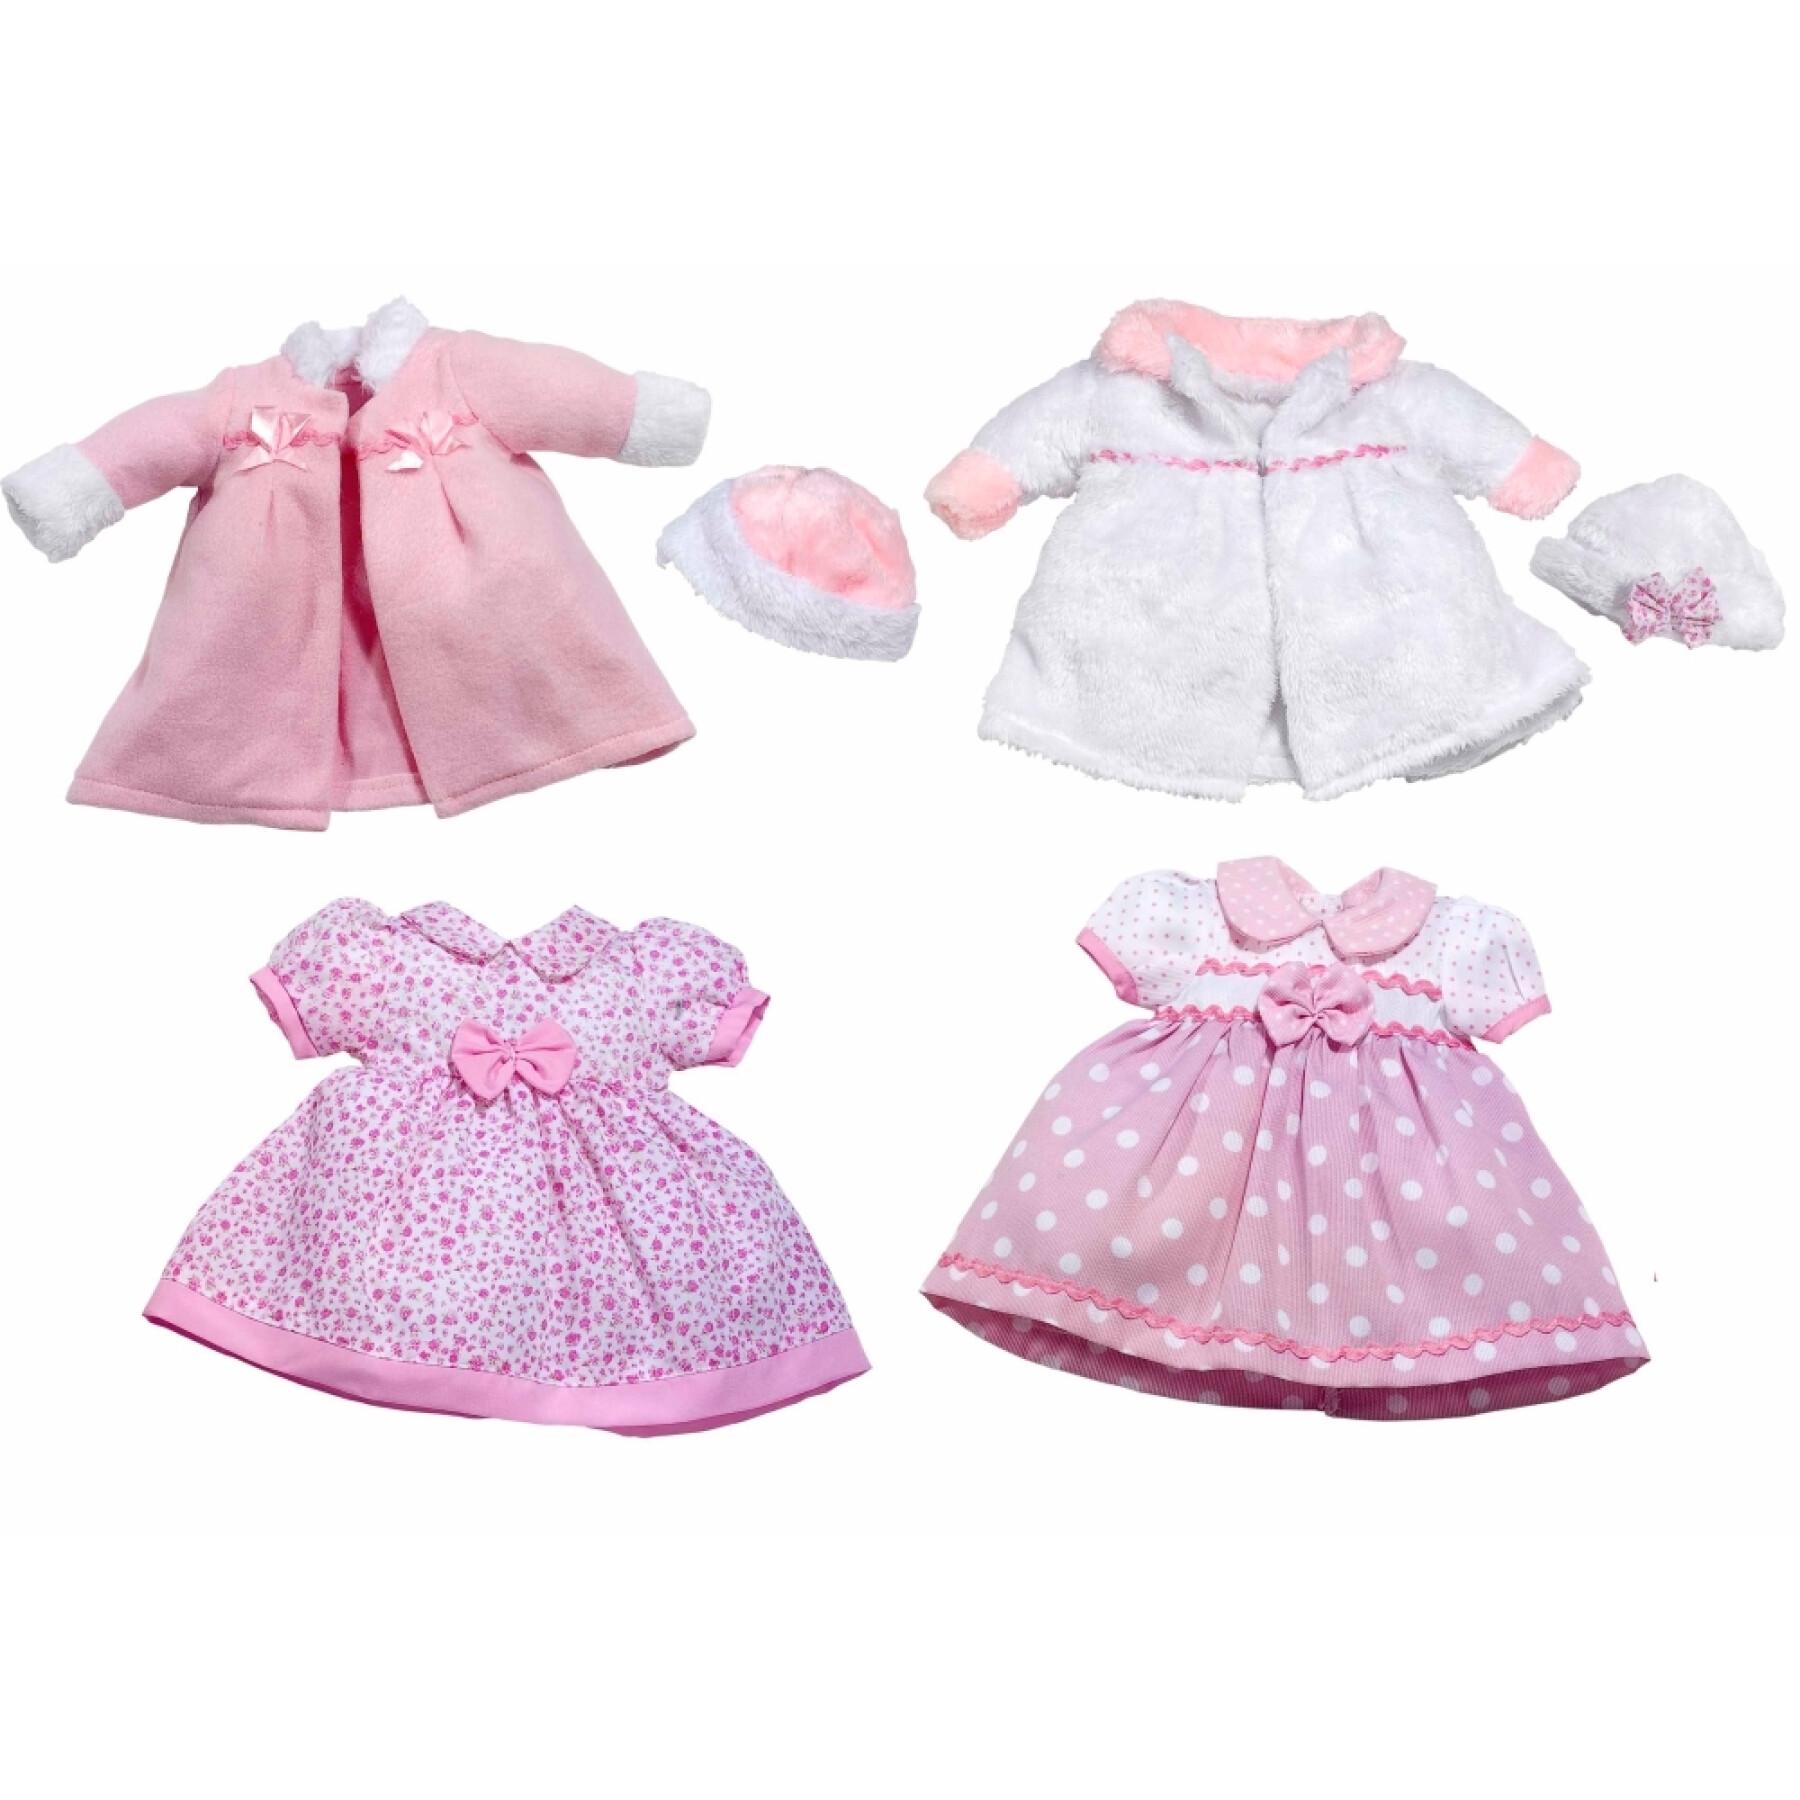 Dresses for dolls Rosatoys 38-42 cm